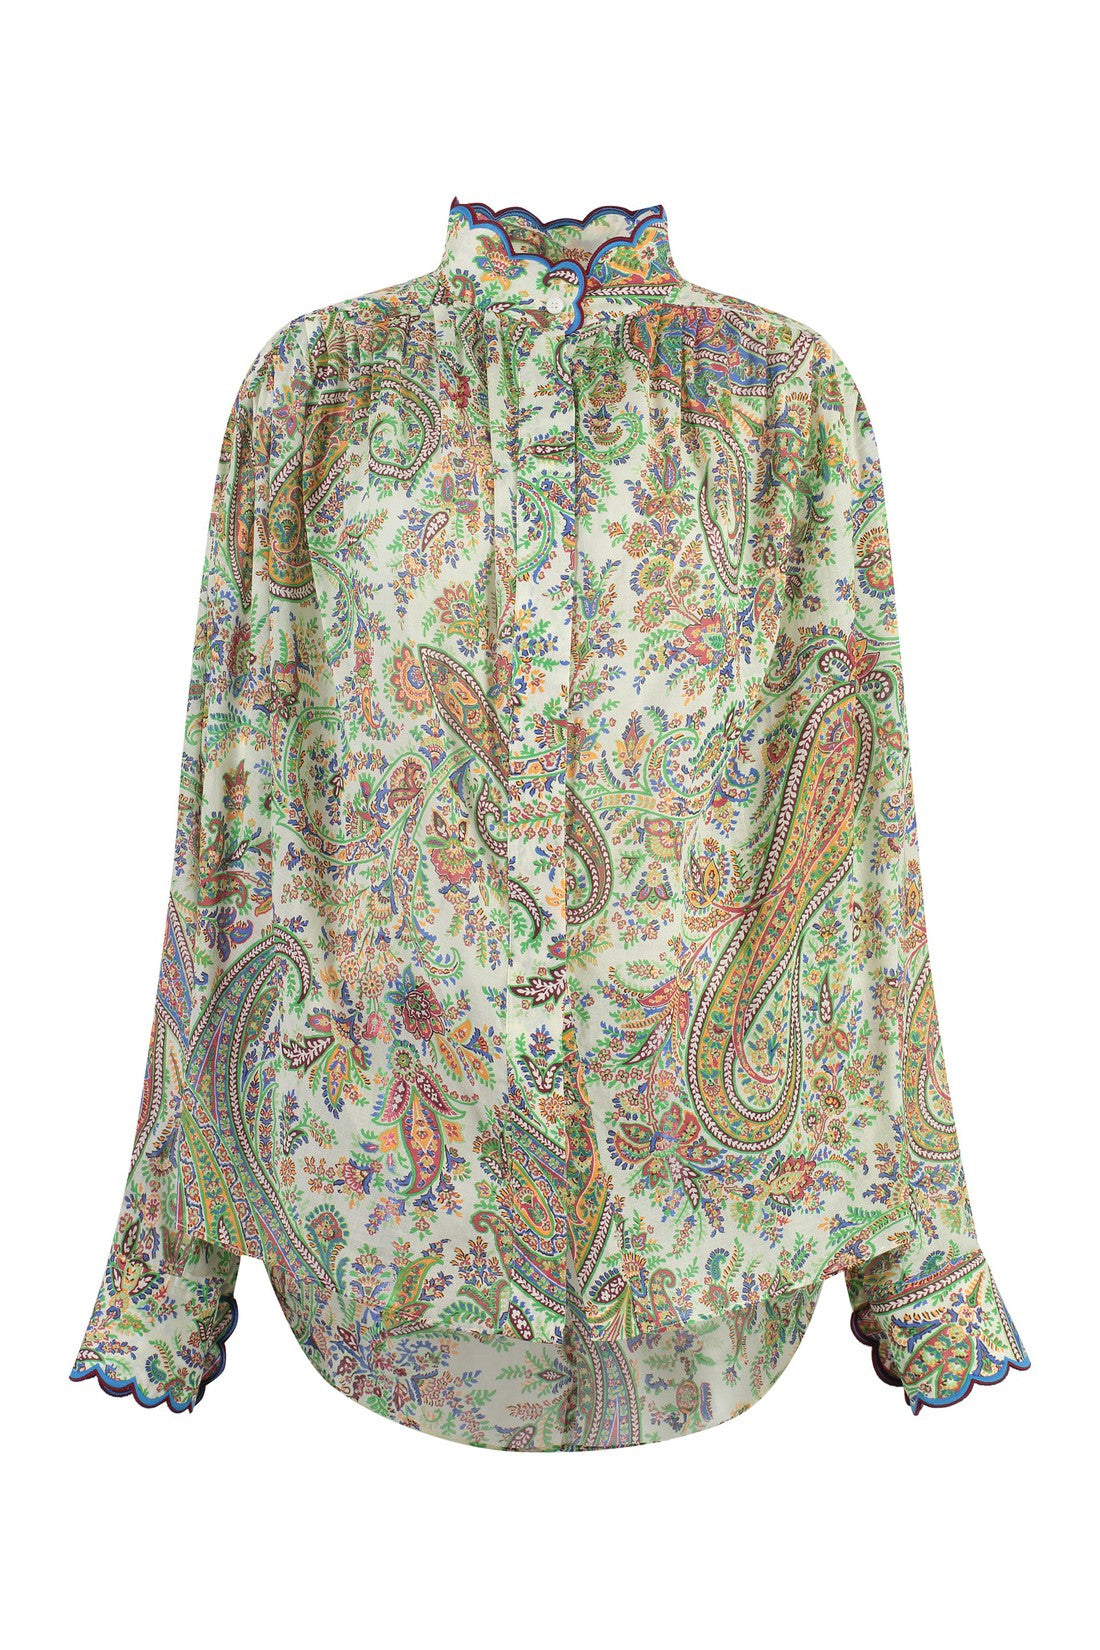 Etro-OUTLET-SALE-Paisley print blouse-ARCHIVIST